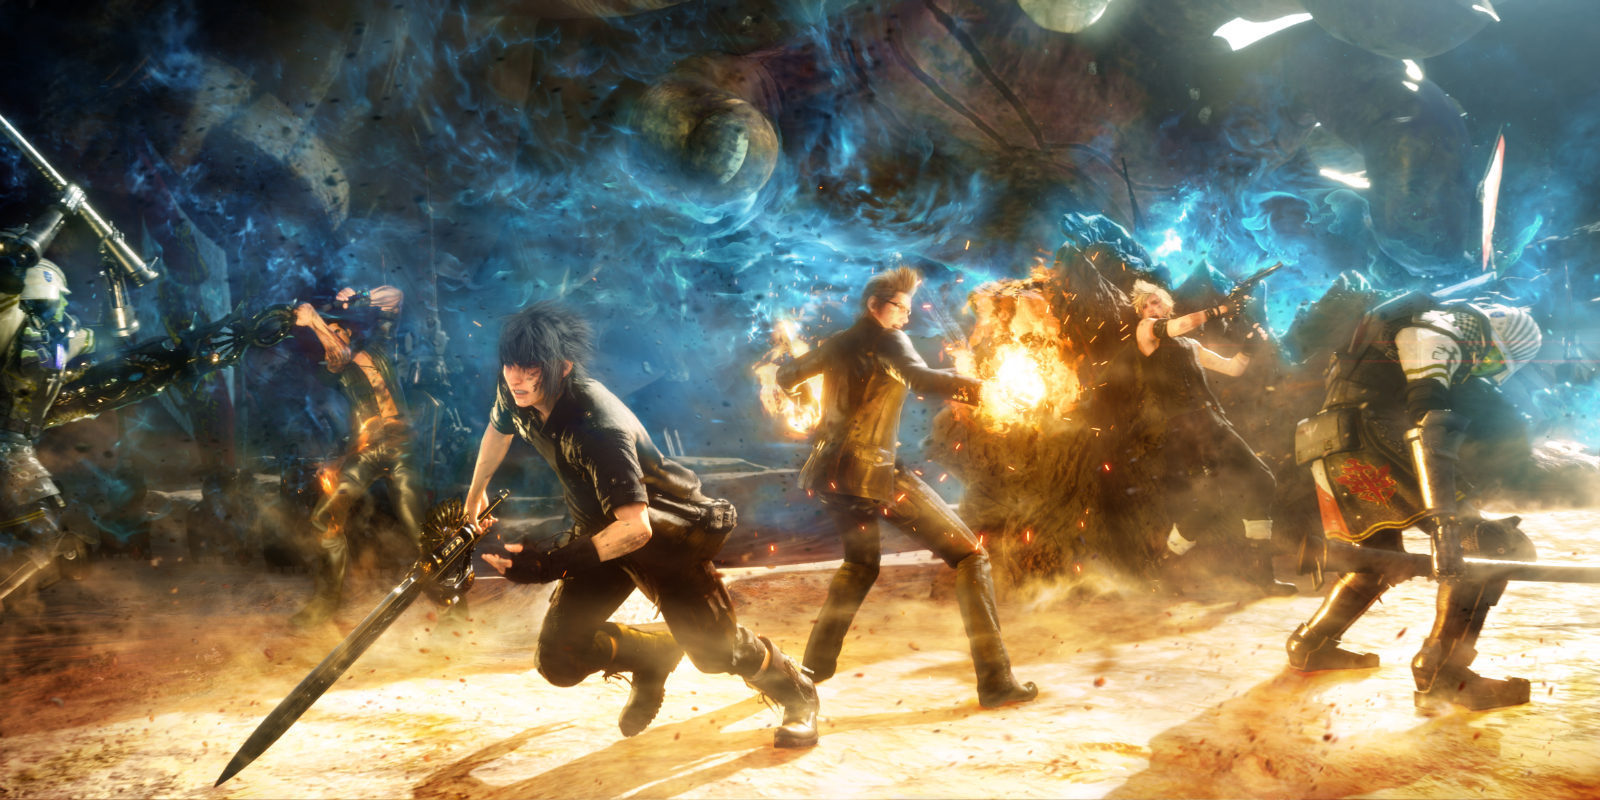 Pronto habrá un concierto dedicado a 'Final Fantasy XV' y podremos verlo todos